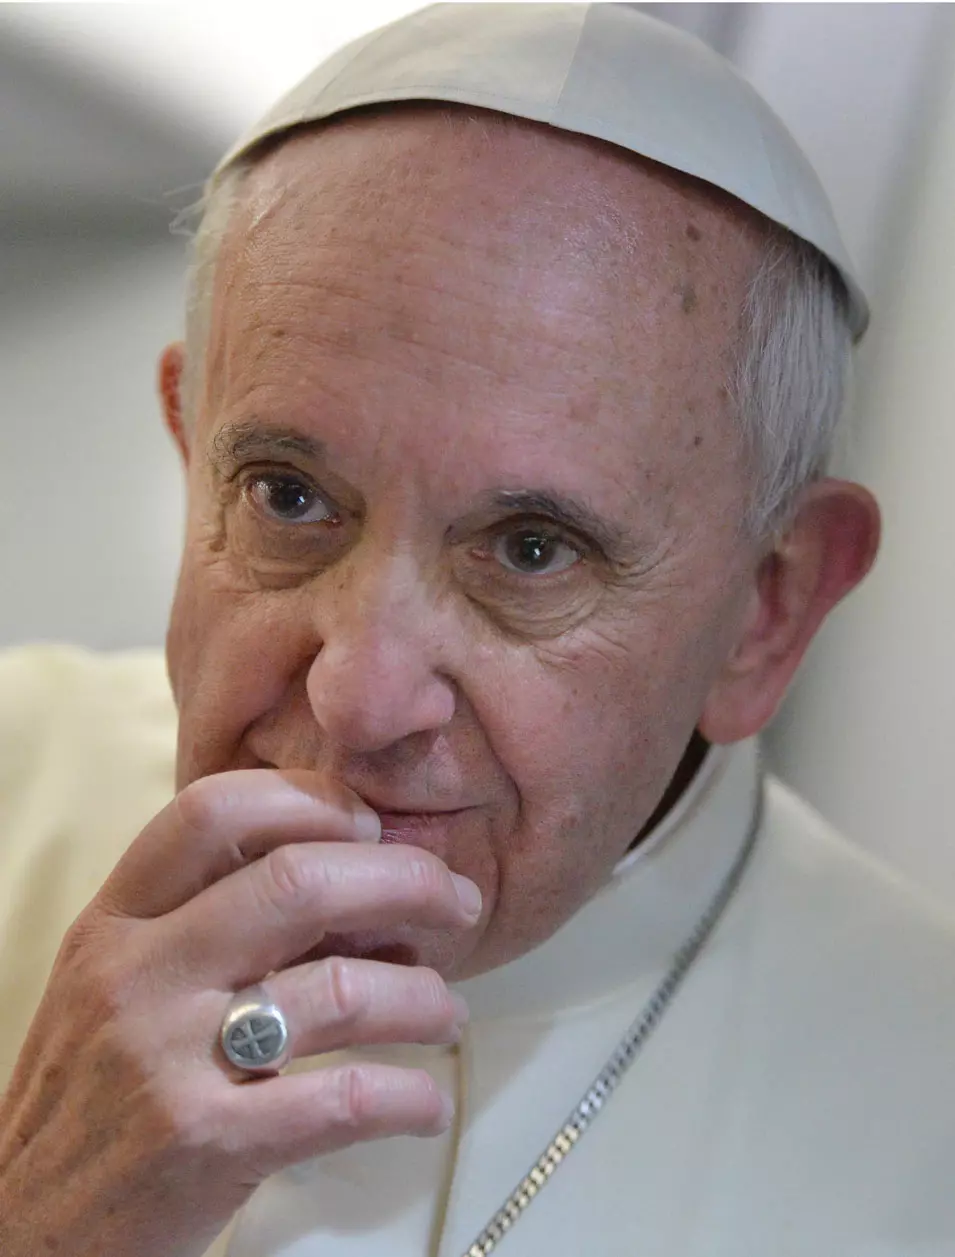 עדיין לא ראה הומוסקסואל עם תעודה. האפיפיור פרנציסקוס